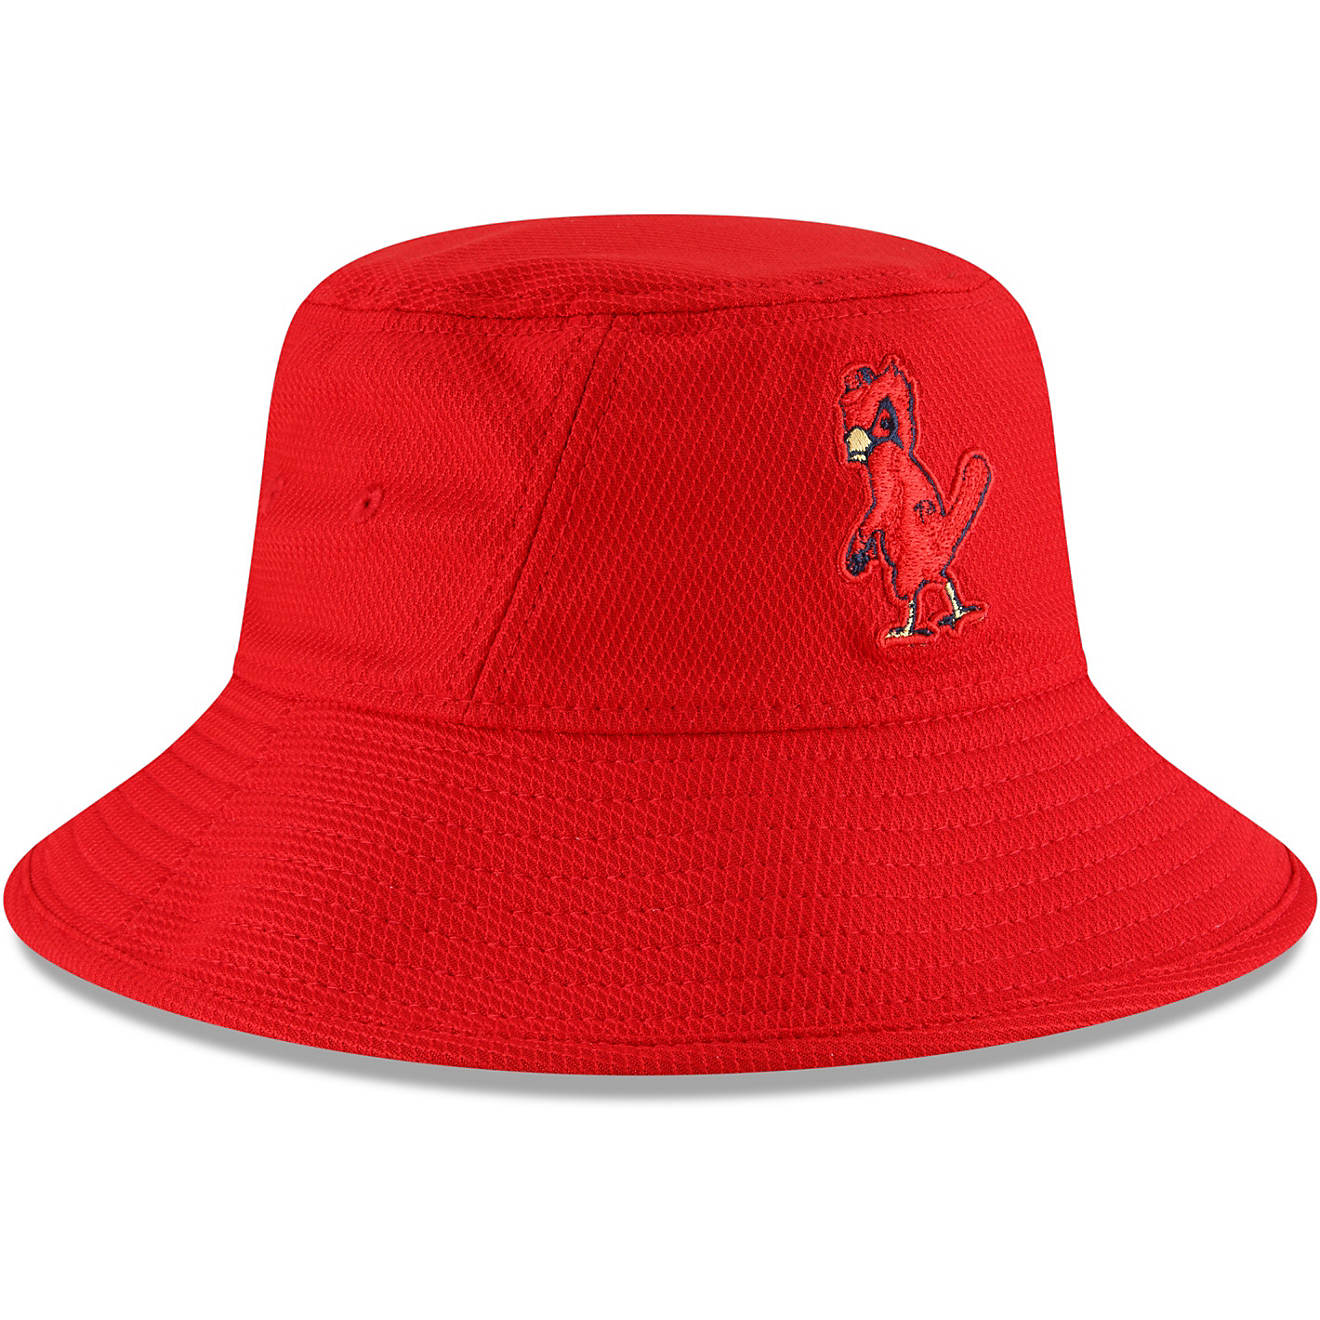 New Era St. Louis Cardinals Batting Practice OTC Bucket Hat                                                                      - view number 1